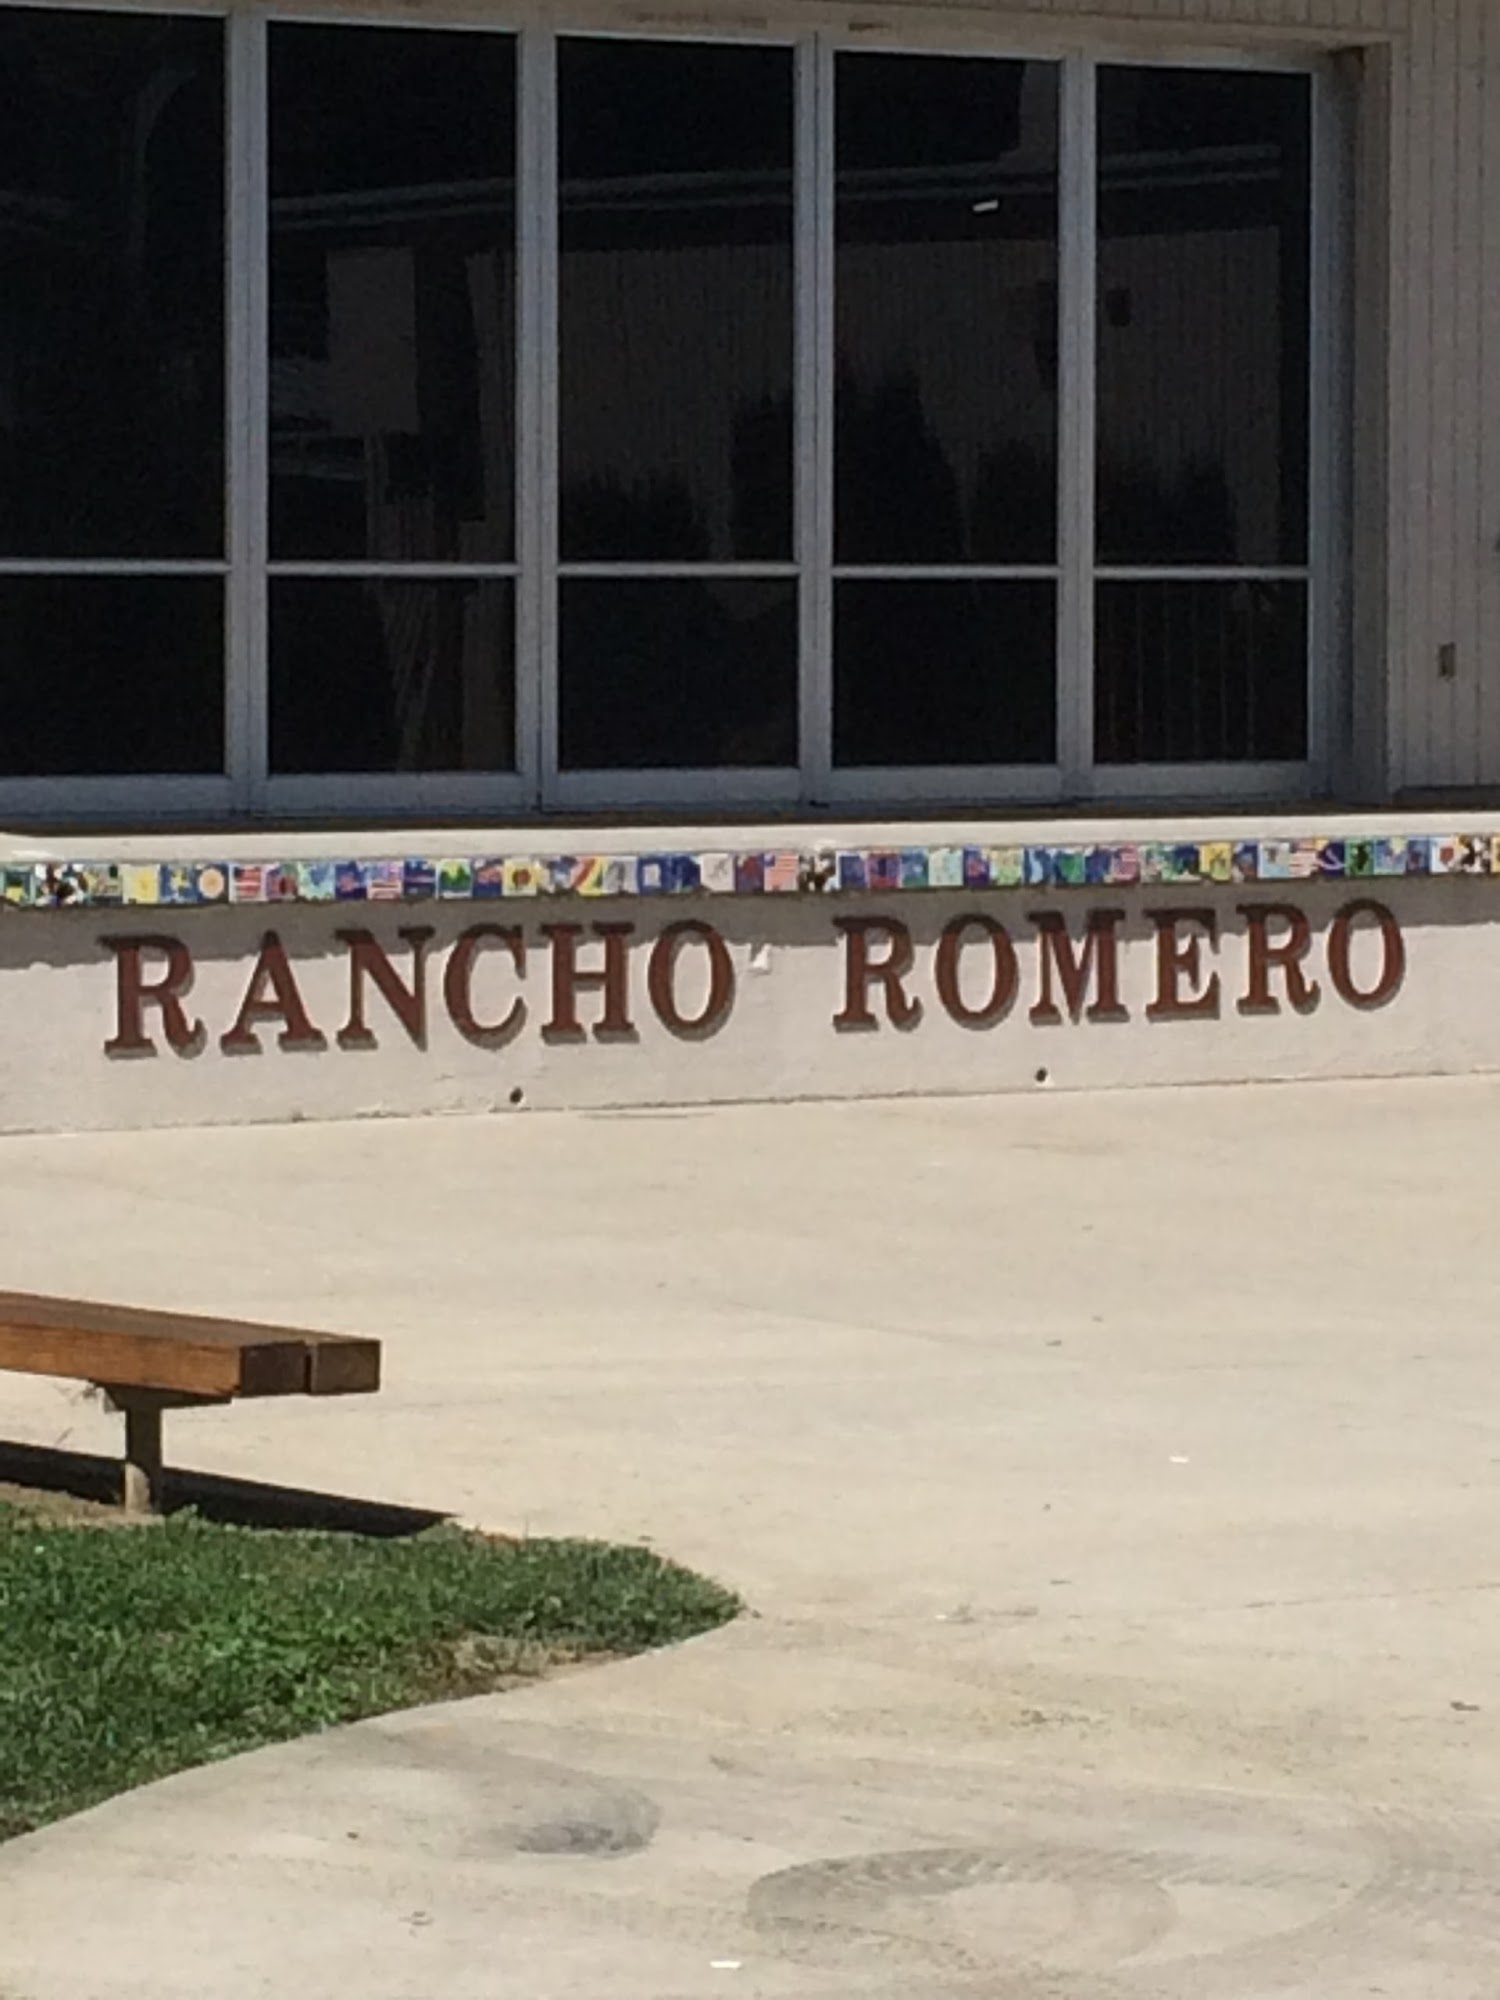 Rancho Romero Elementary School